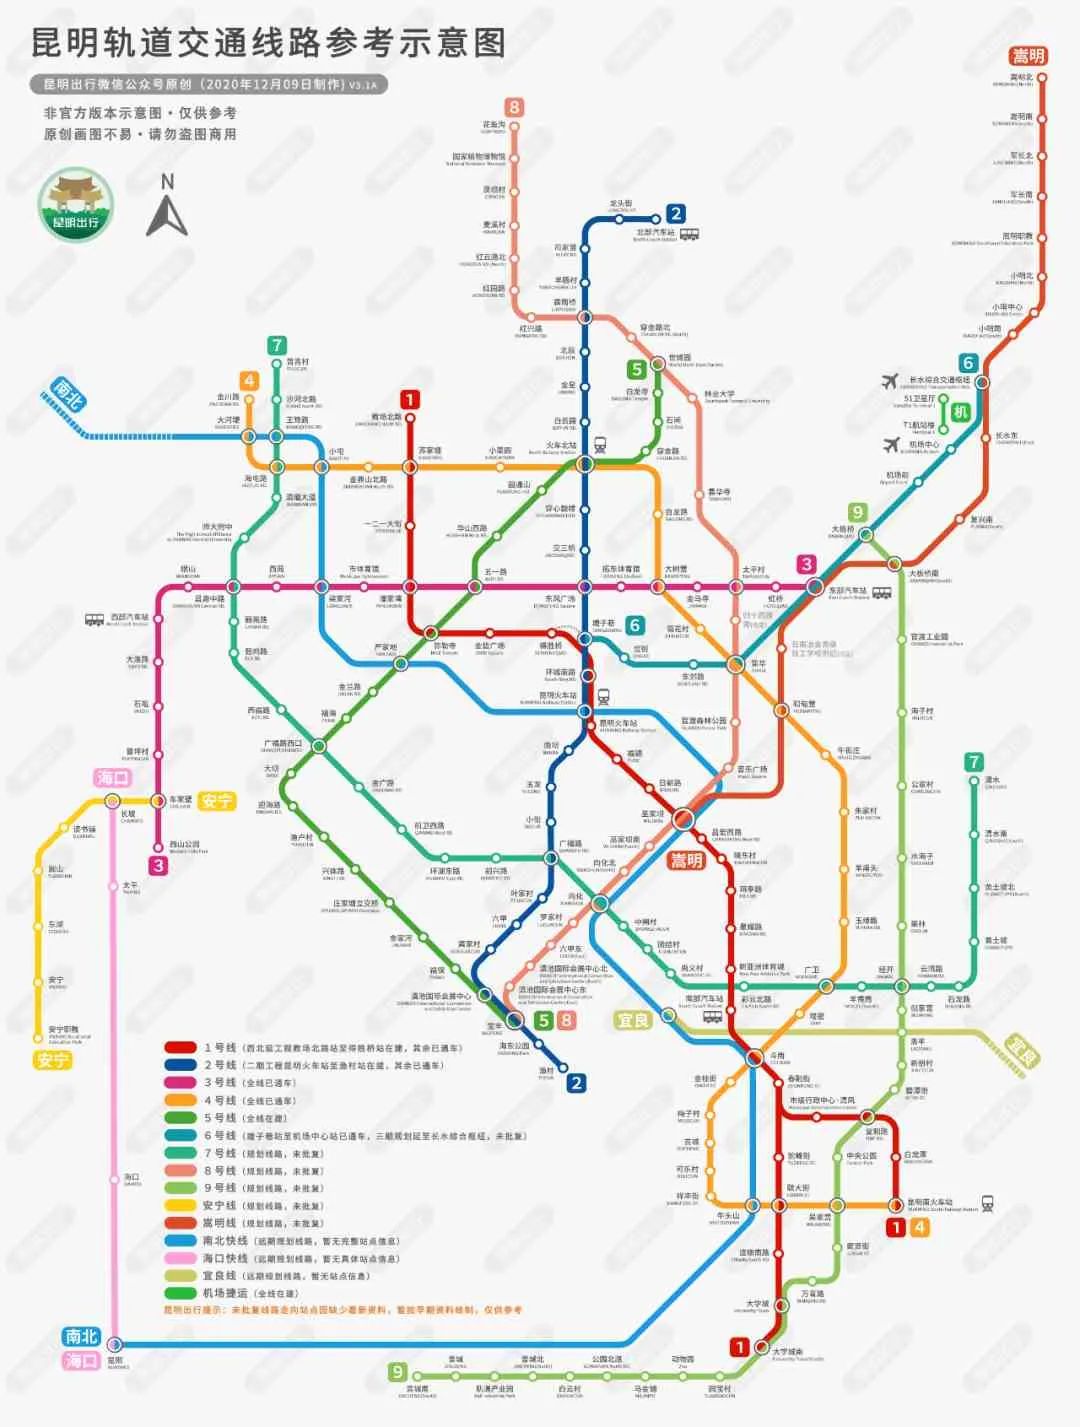 最新昆明地铁9号线拟延伸至晋宁还有南北快线海口快线